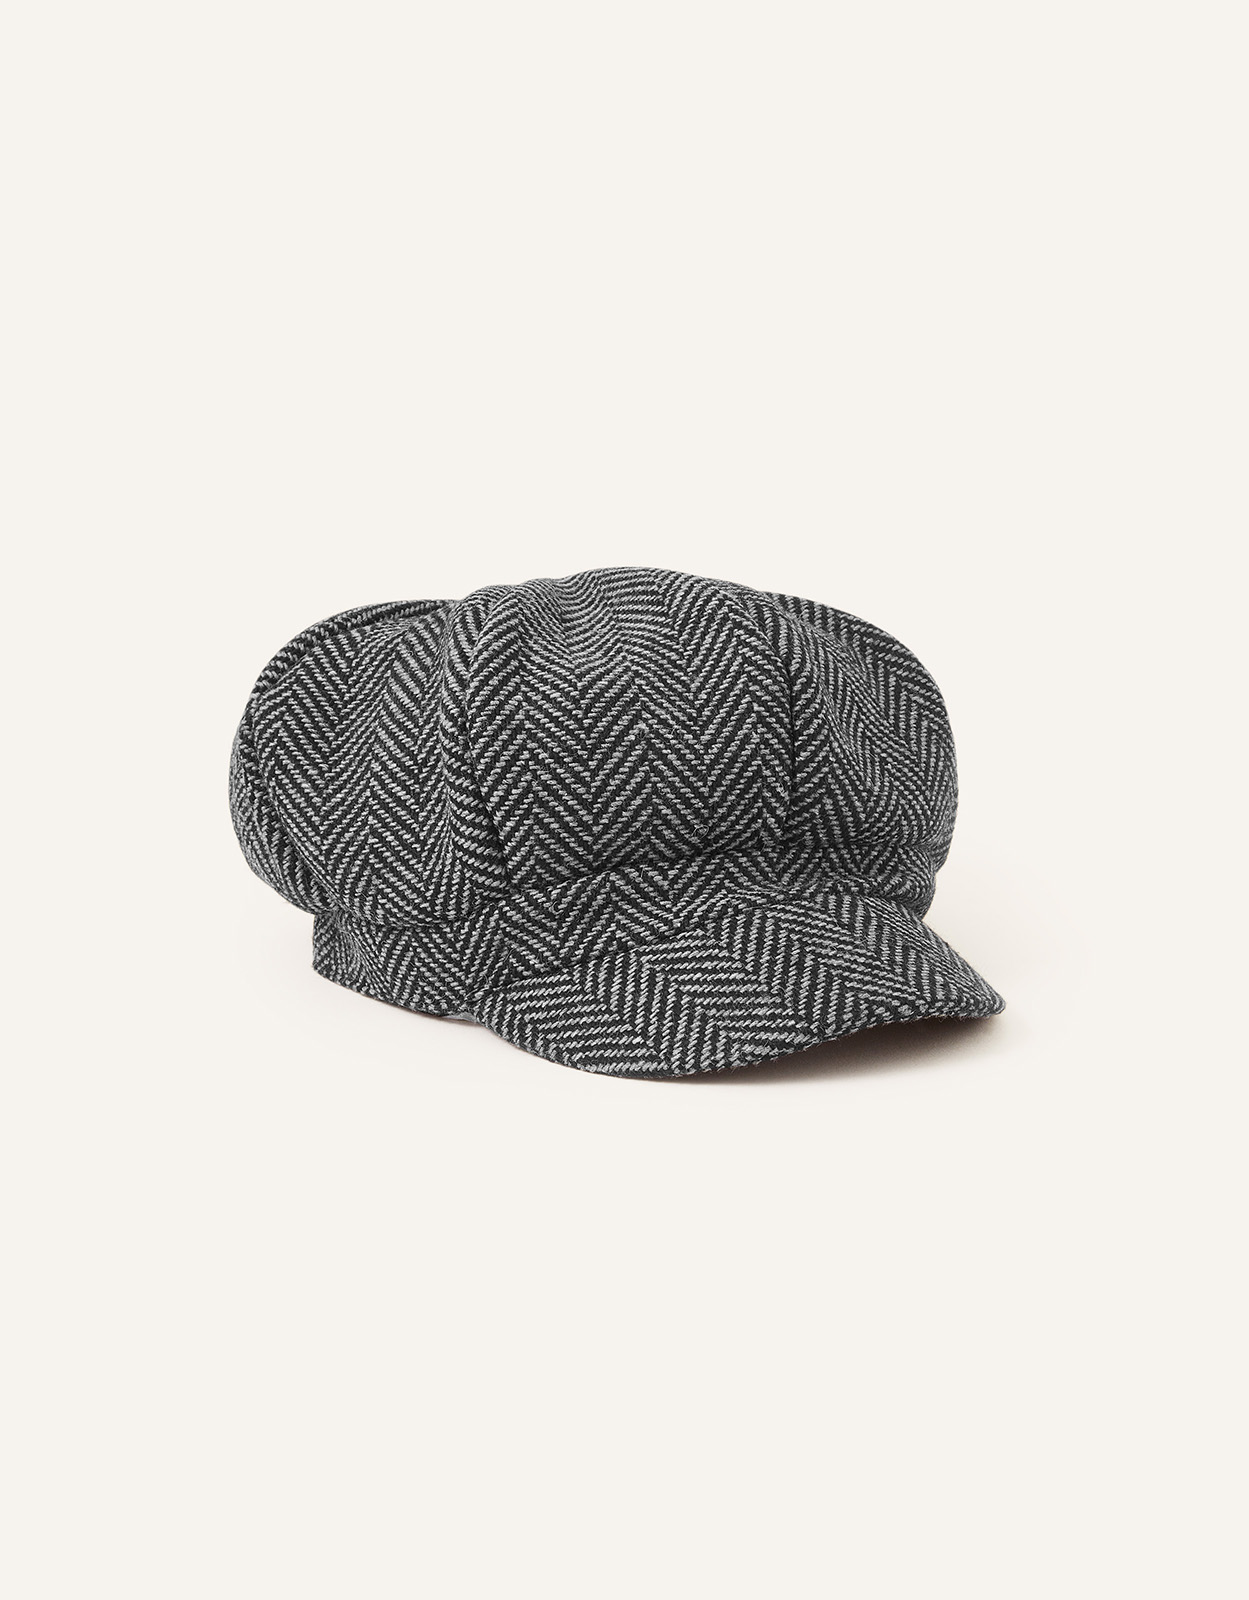 Accessorize Men's Herringbone Baker Boy Hat, Size: One Size